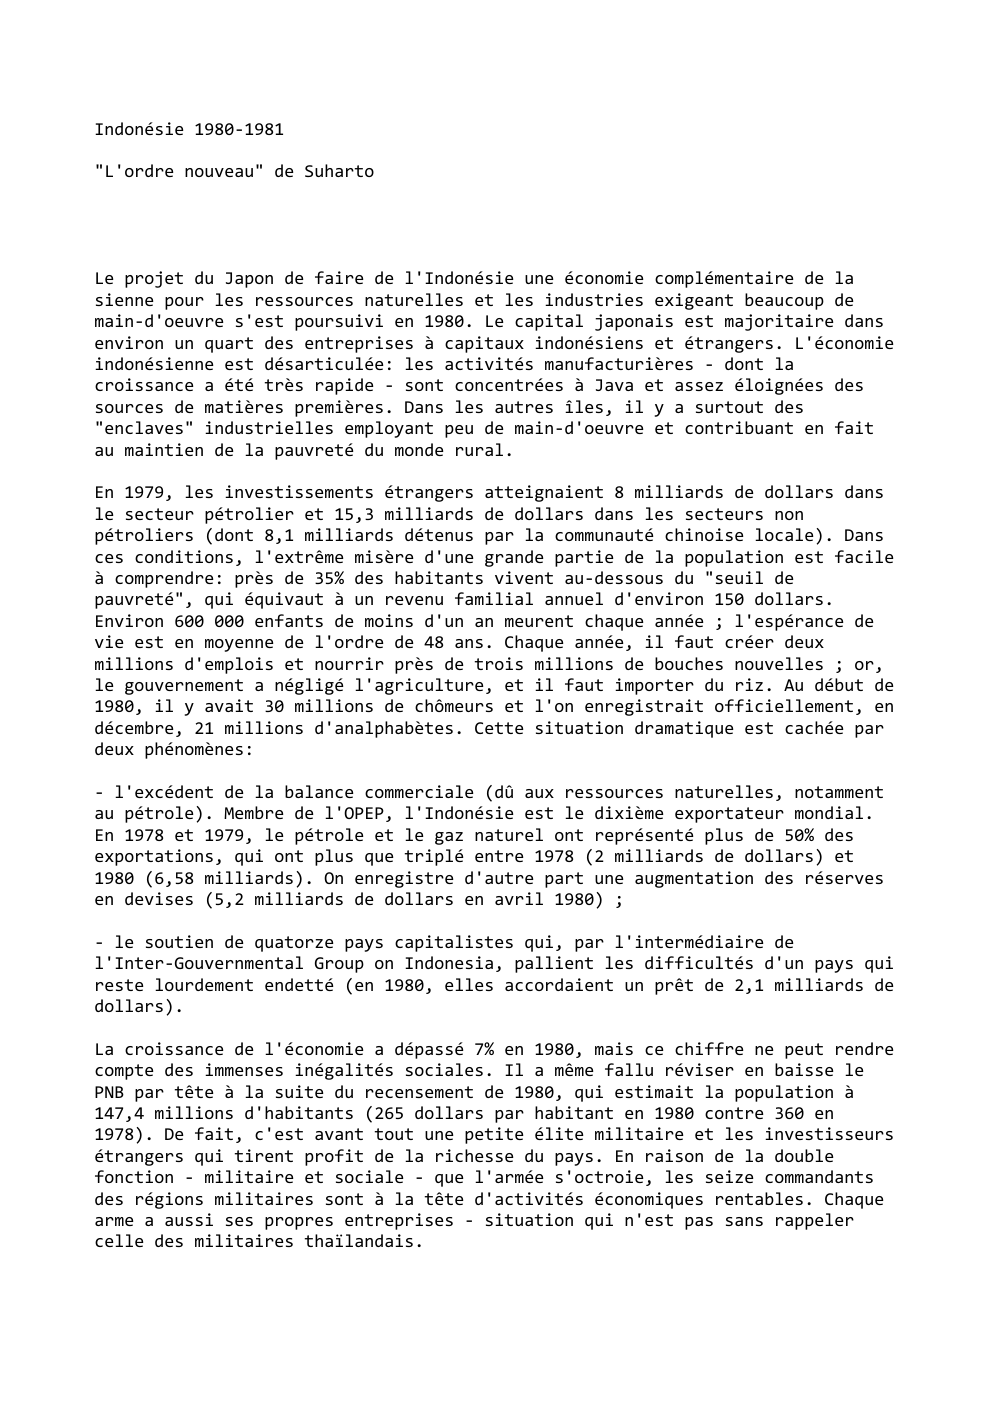 Prévisualisation du document Indonésie 1980-1981
"L'ordre nouveau" de Suharto

Le projet du Japon de faire de l'Indonésie une économie complémentaire de la
sienne...